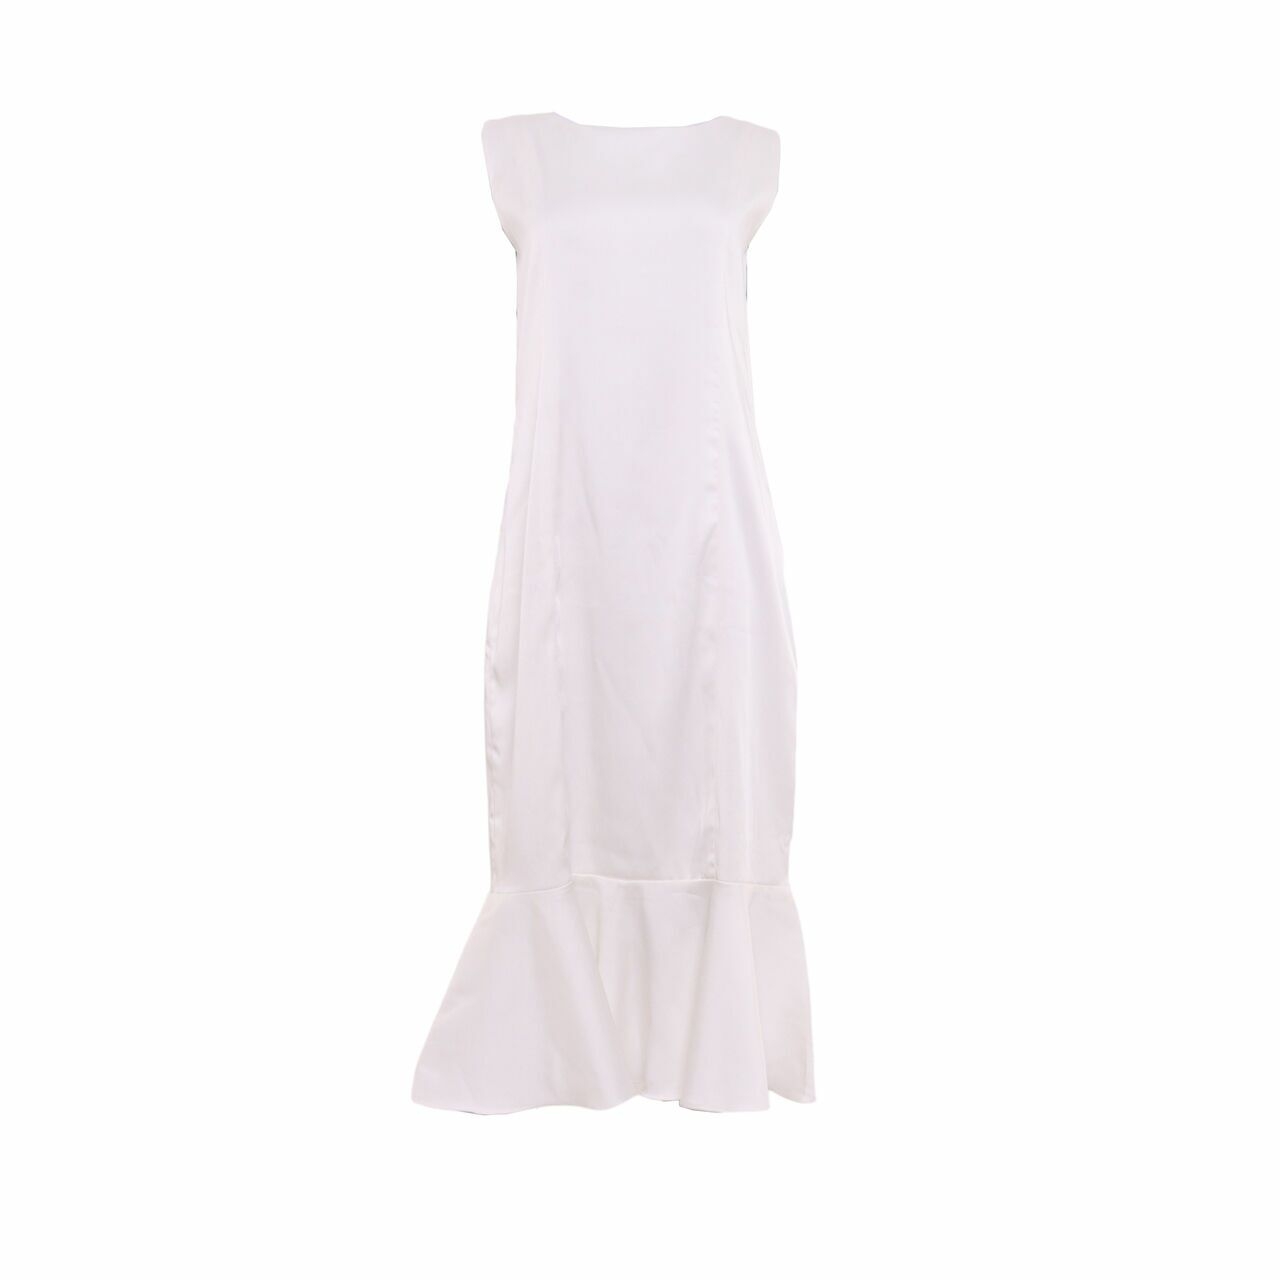 Agree to Shop White Midi Dress